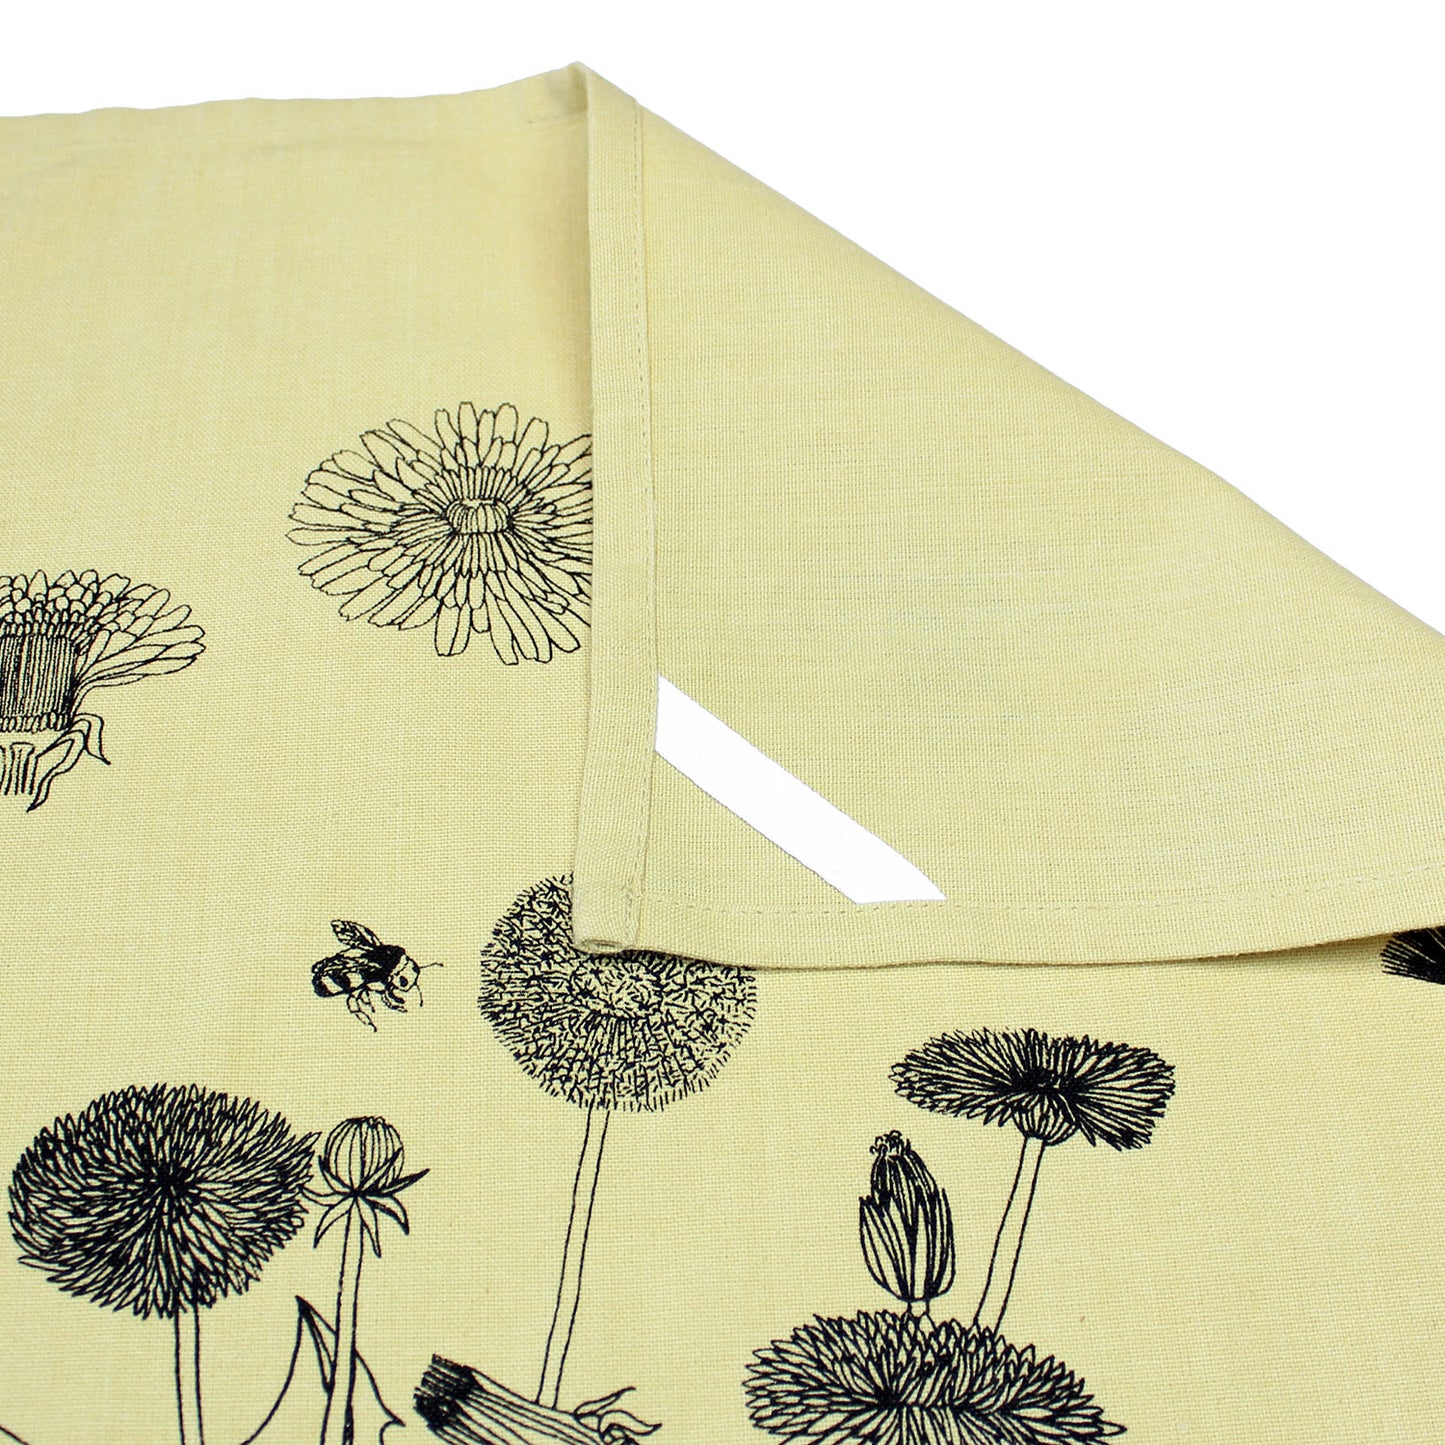 Dandelion & Honeybees - Hand Printed Artisan Tea Towel